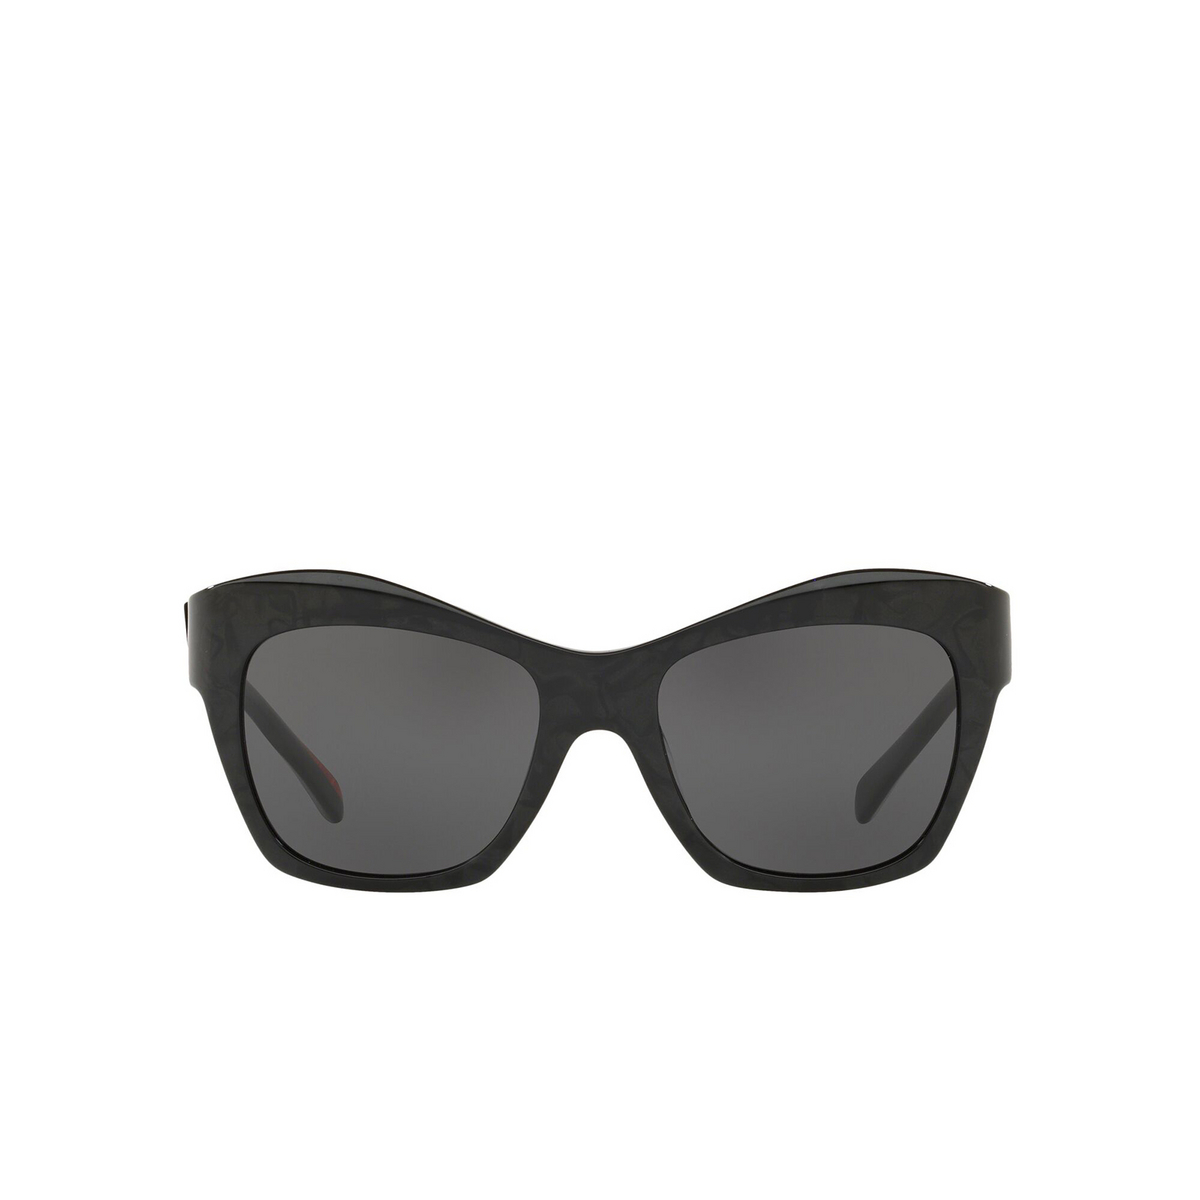 Alain Mikli® Butterfly Sunglasses: Nuages A05043 color Noir Mikli 001/87 - front view.